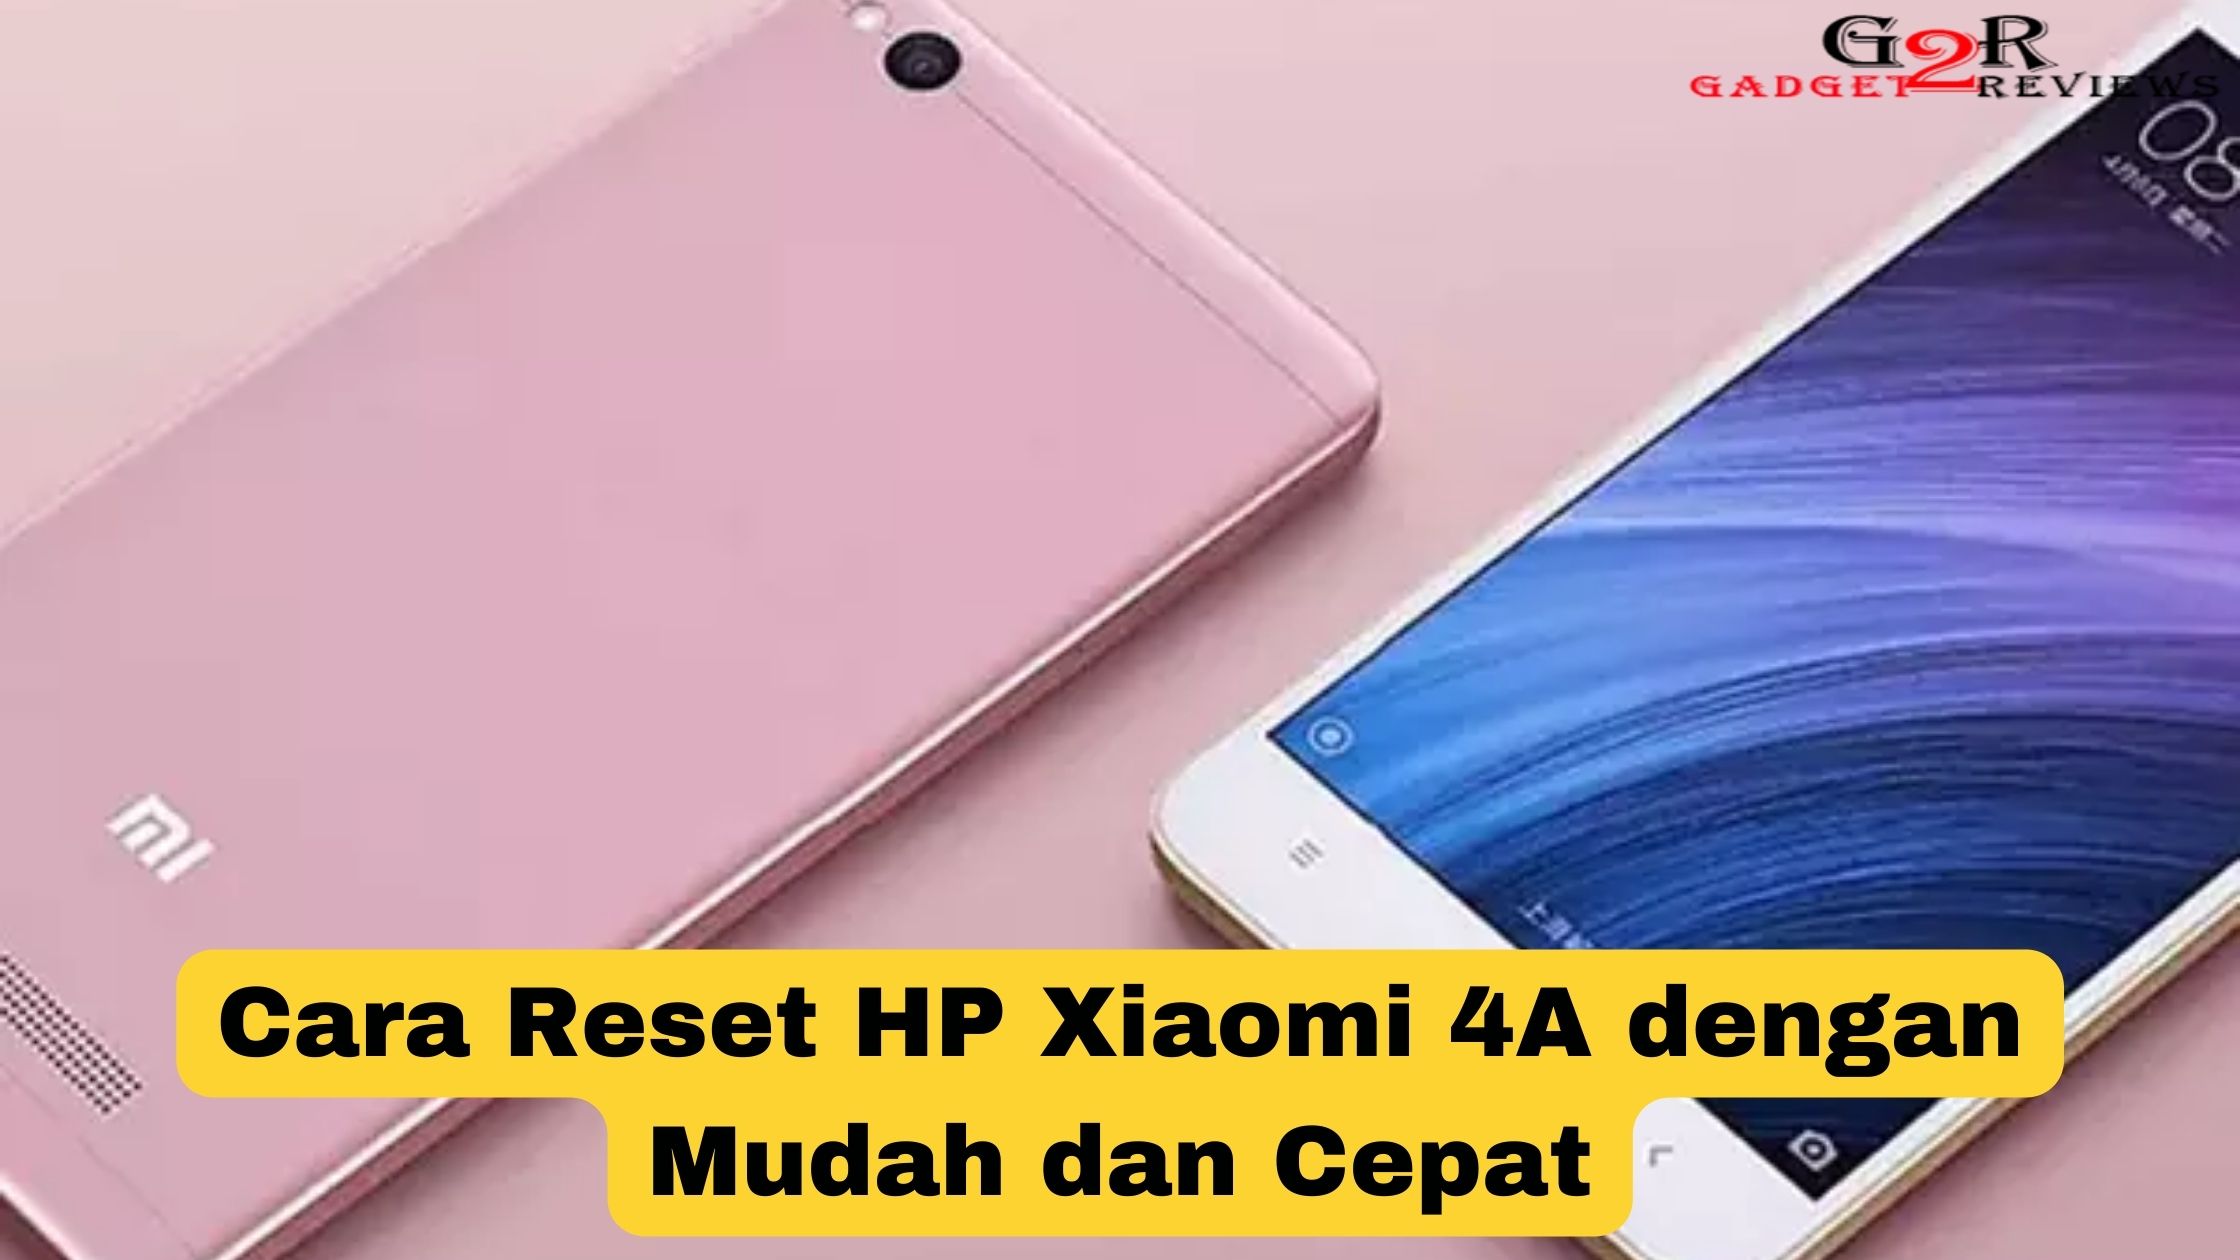 Cara Reset HP Xiaomi 4A